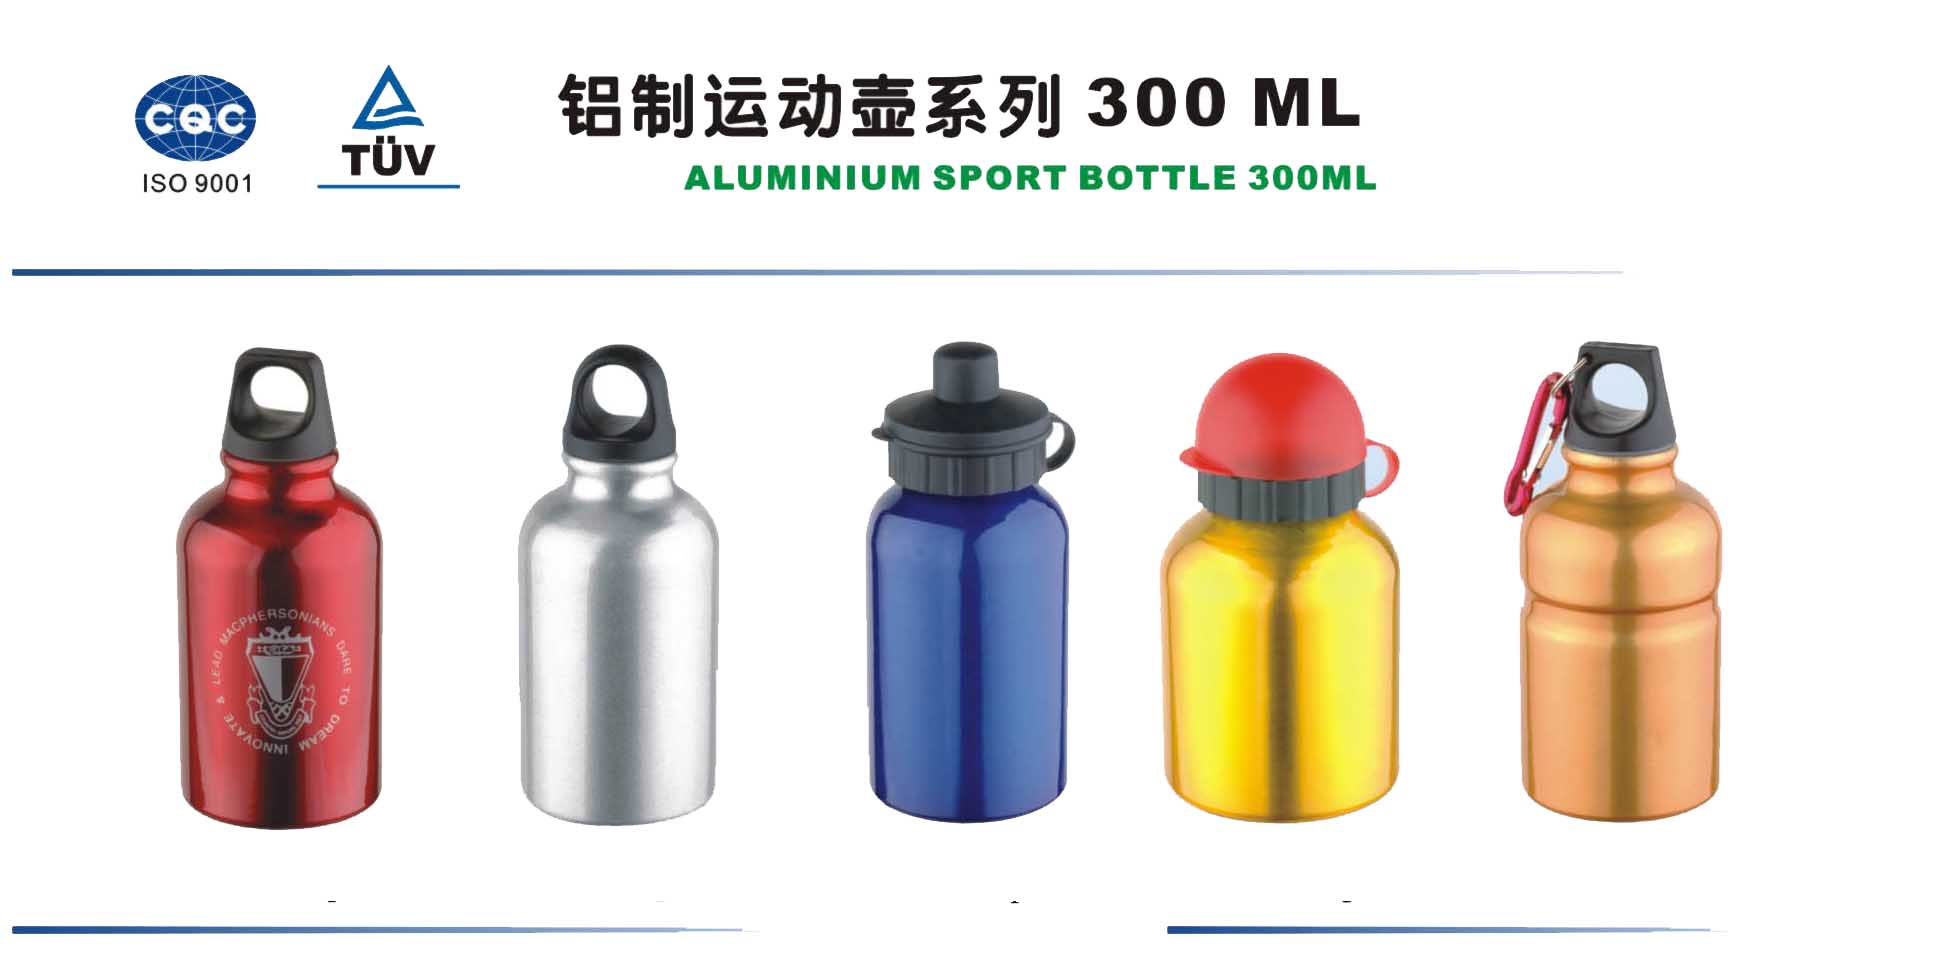 Alu-Flasche 300ml (Alu-Flasche 300ml)